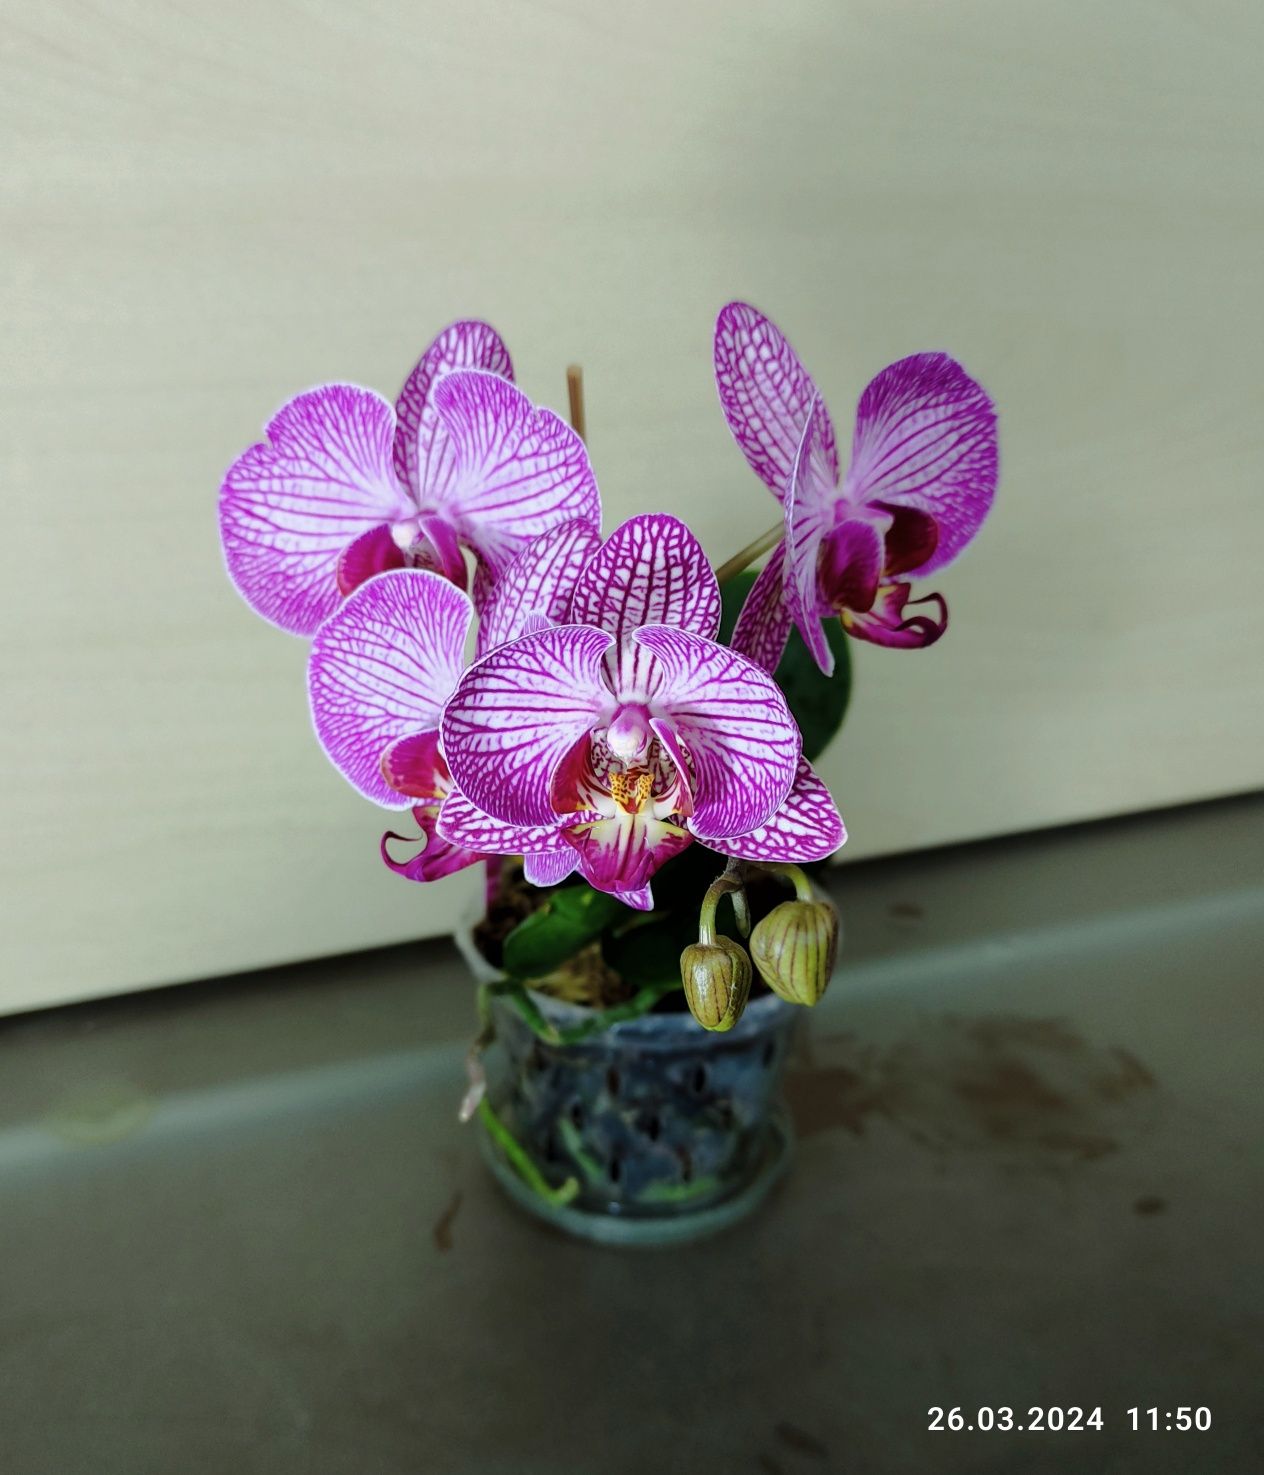 Мини орхидея фаленопсис малиновая паутинка сейчас цветет